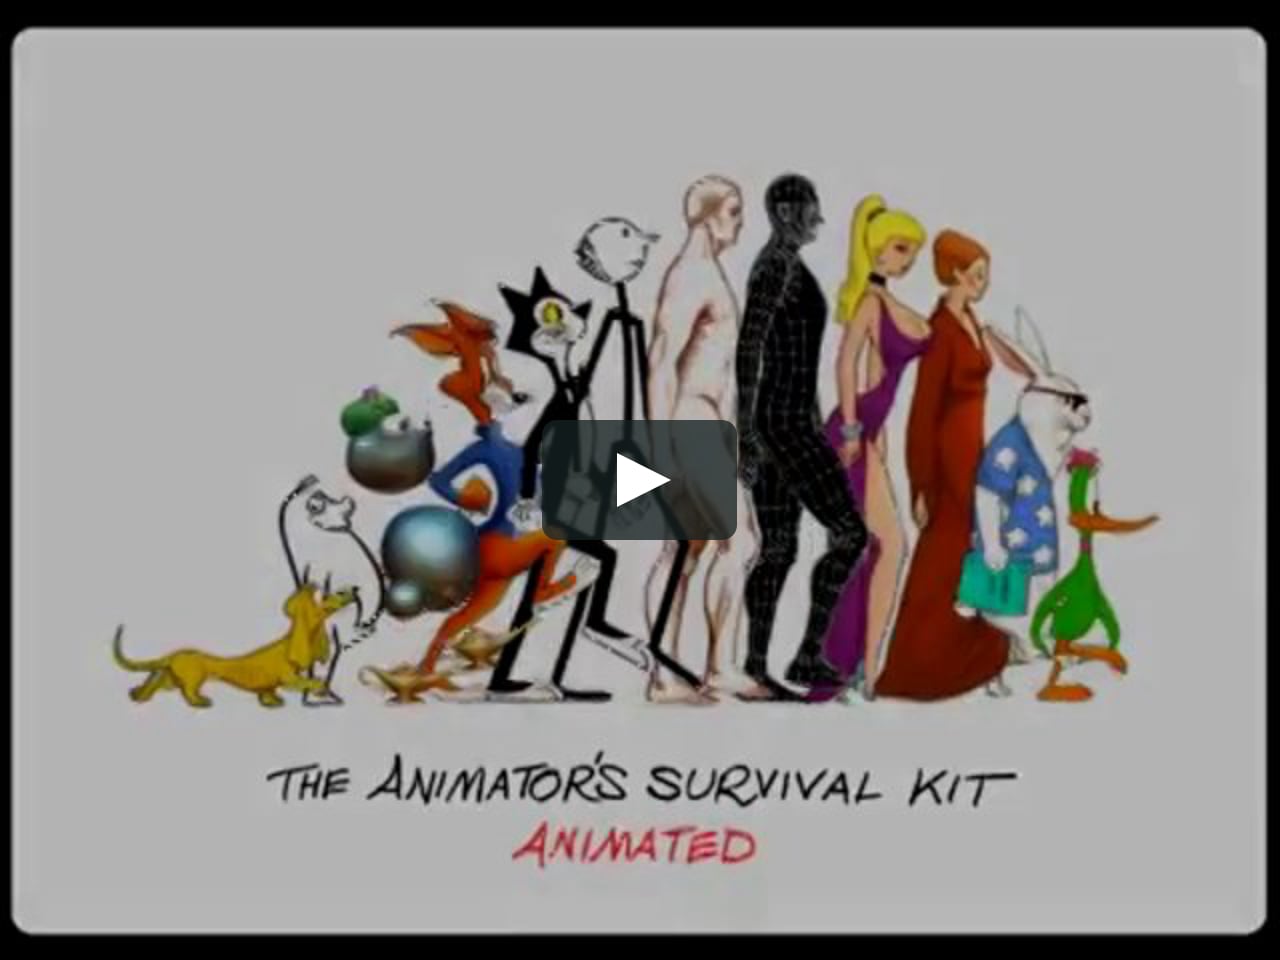 Logo of The Animator's Survival Kit on Vimeo